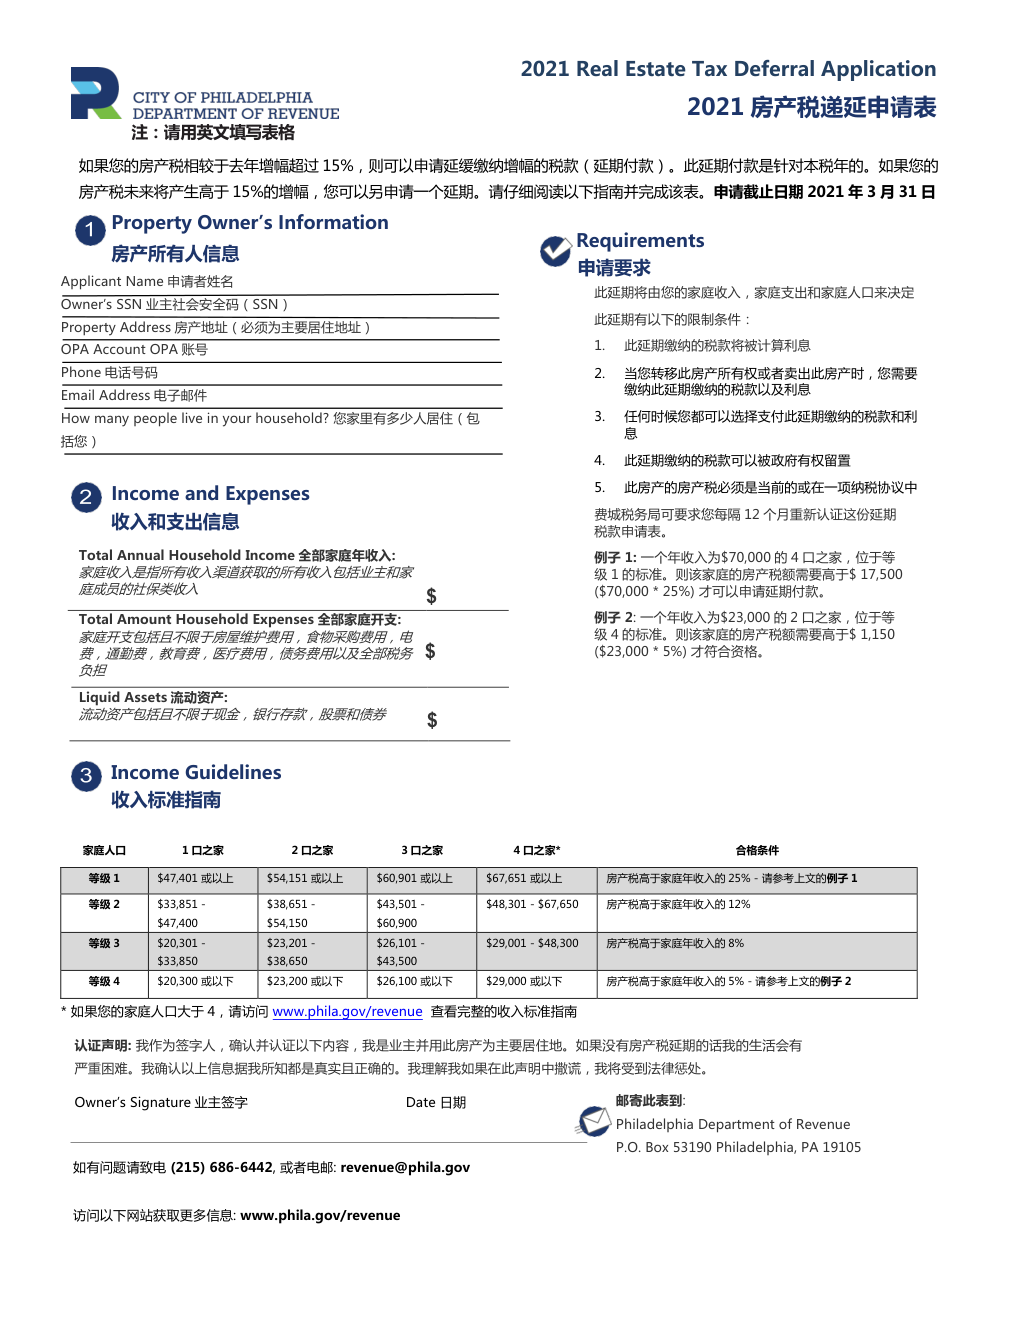 2021 房产税递延申请表 Real-Estate-Tax-deferral-application-2021-Chinese-0